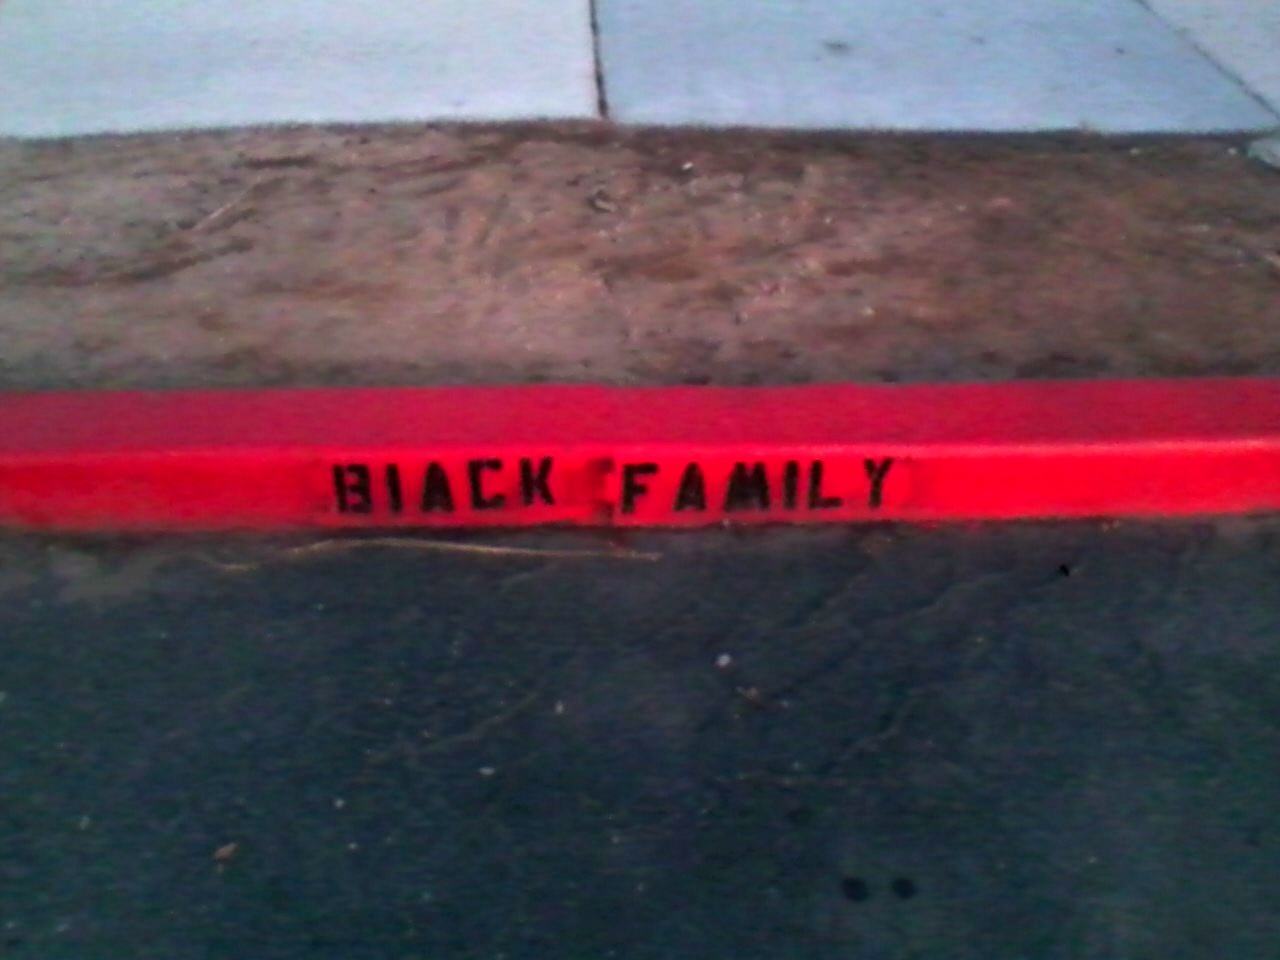 Obrázek Biack family 20-12-2011